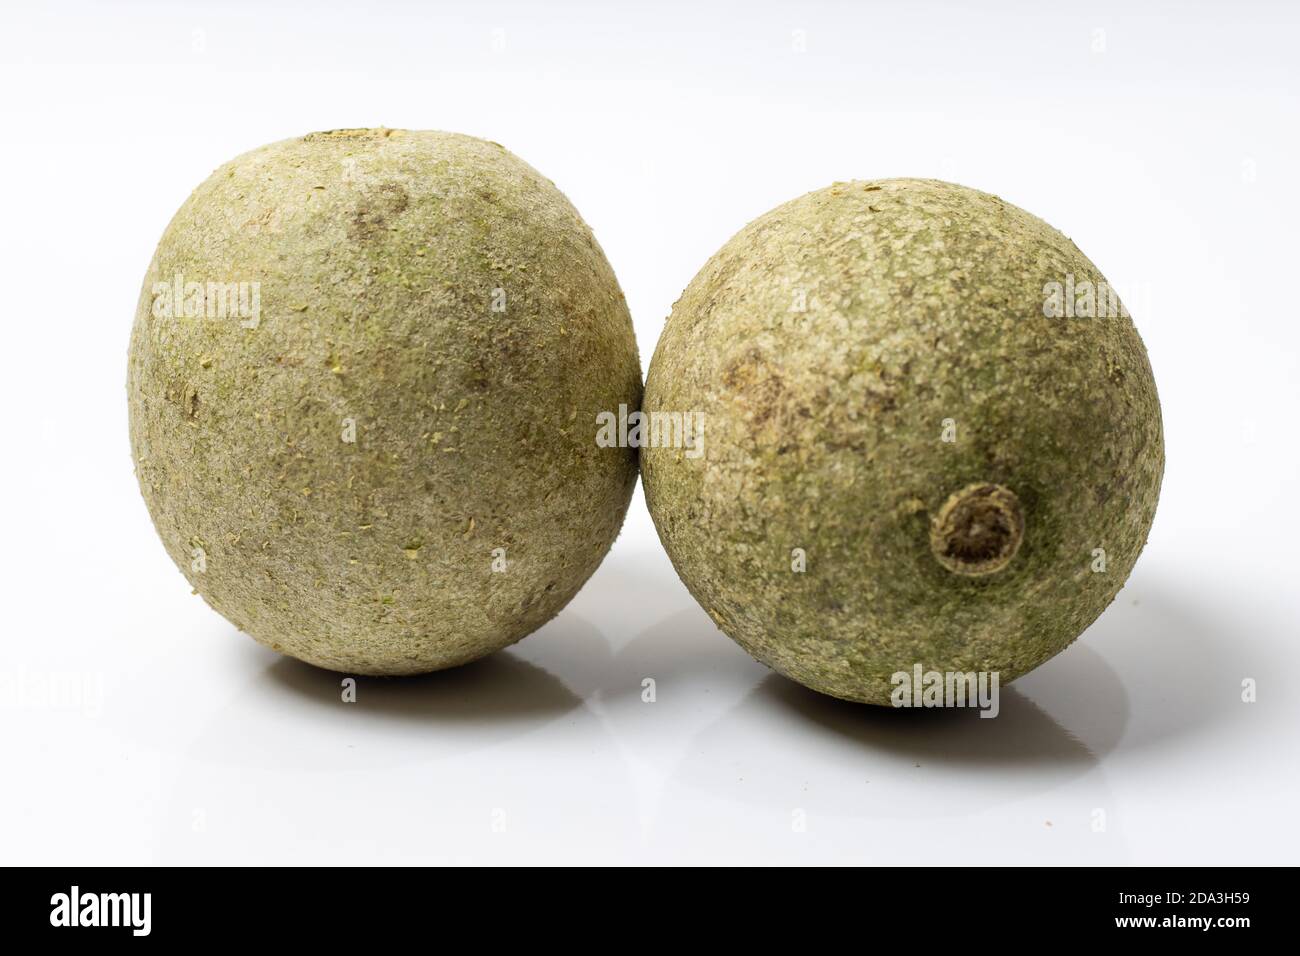 Two whole limonia acidissima fruit or wood apple isolated on white background Stock Photo